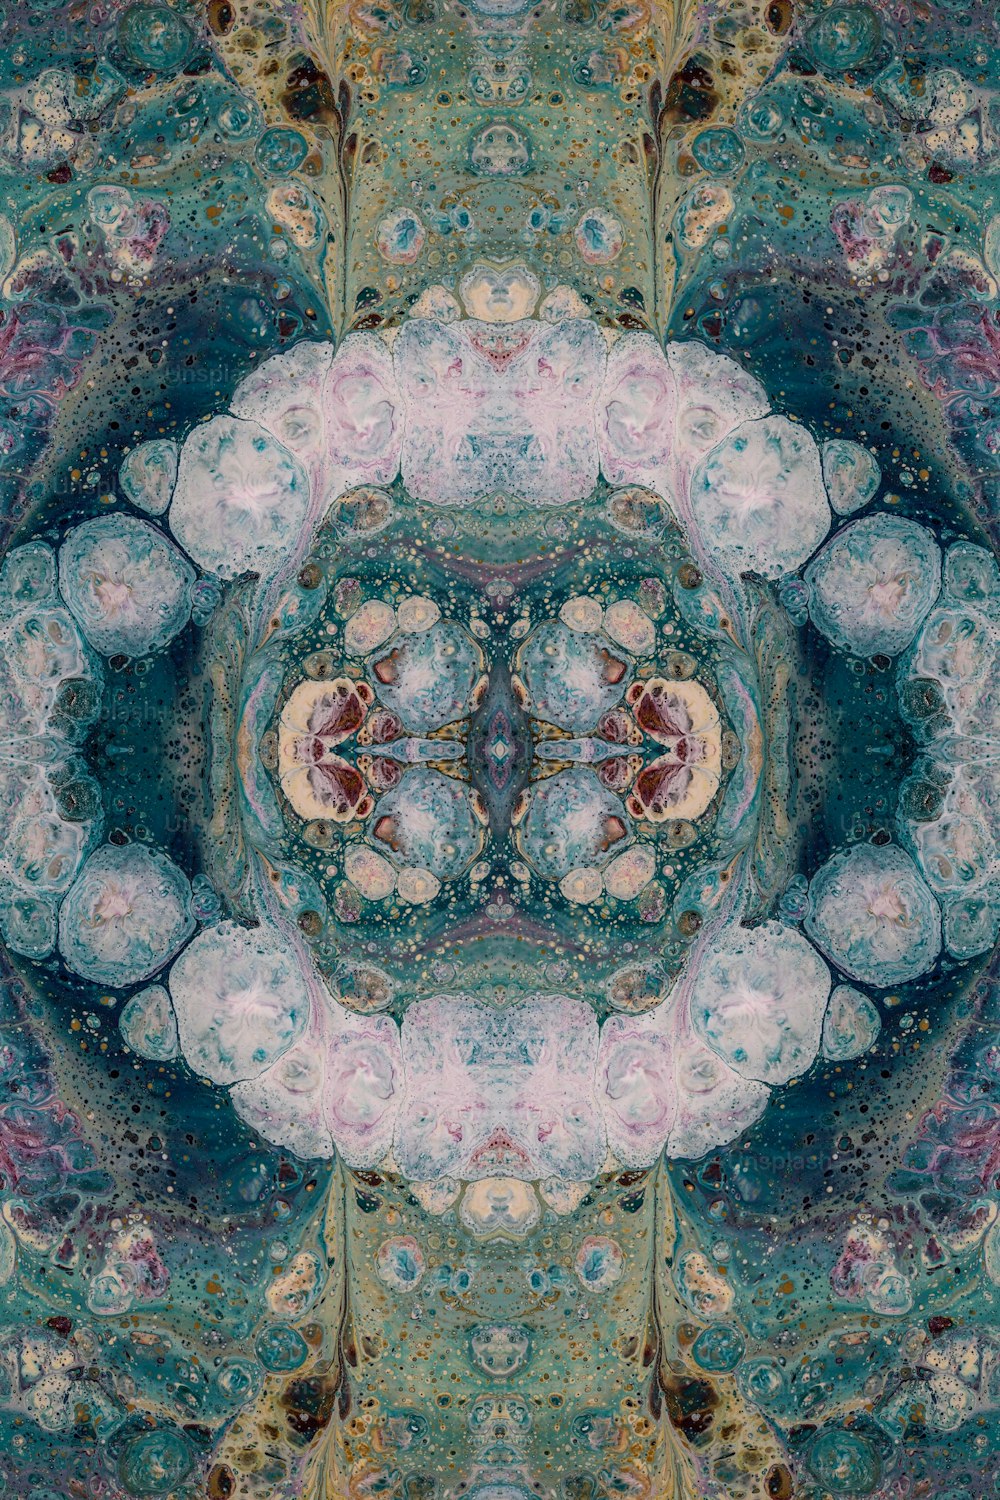 a kaleidoscope photograph of a flower